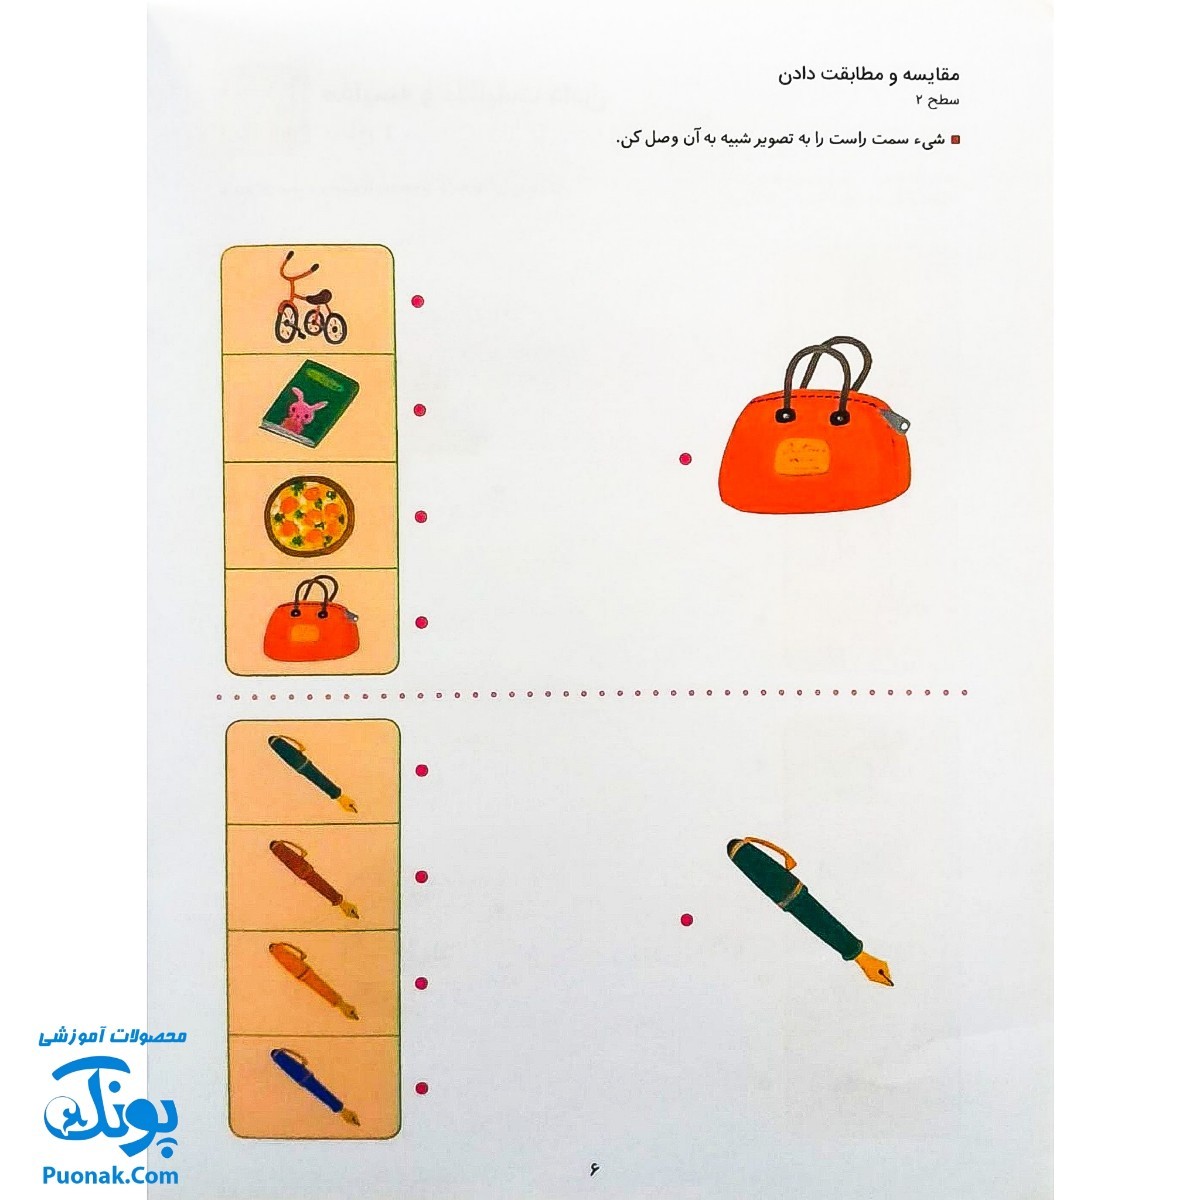 کتاب کار کومن ادراک استدلال قیاسی ۱ (پرورش مهارت های تفکر کودک از طریق فعالیت های مانند تطابق تصویرها و تشخیص شباهت ها و تفاوت ها)